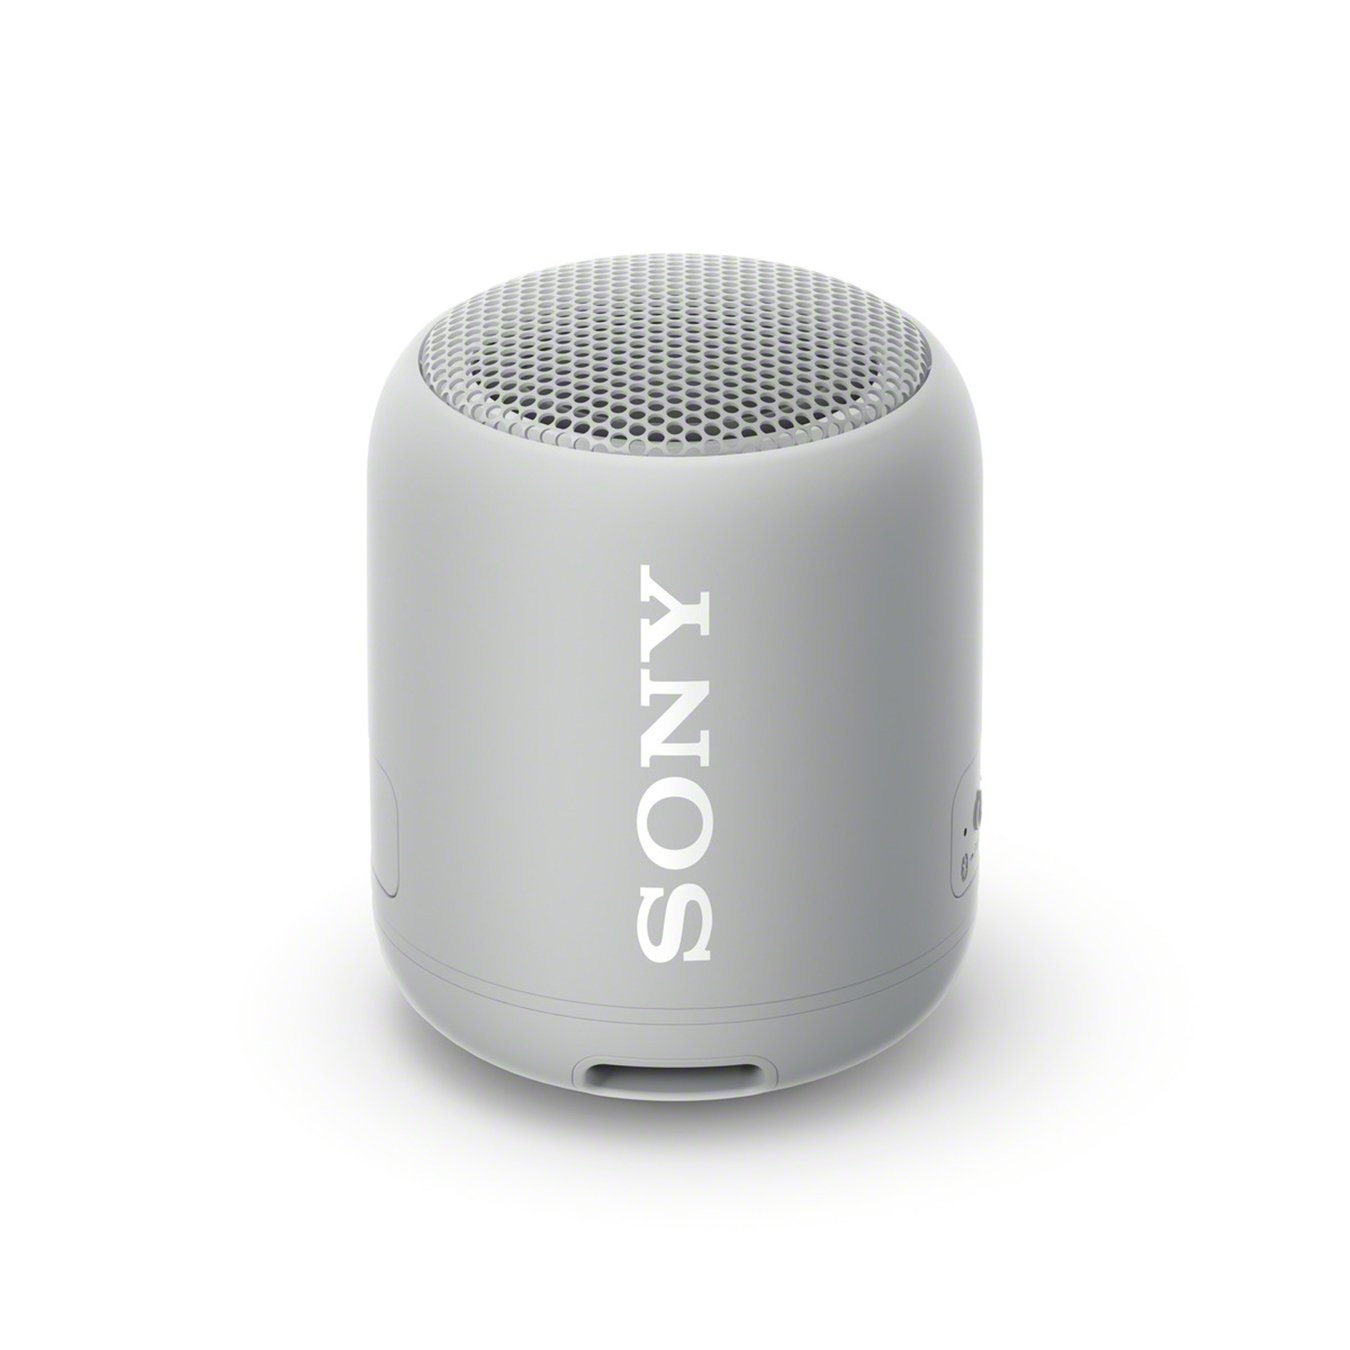 Sony SRS-XB12 Waterproof Wireless Speaker Review